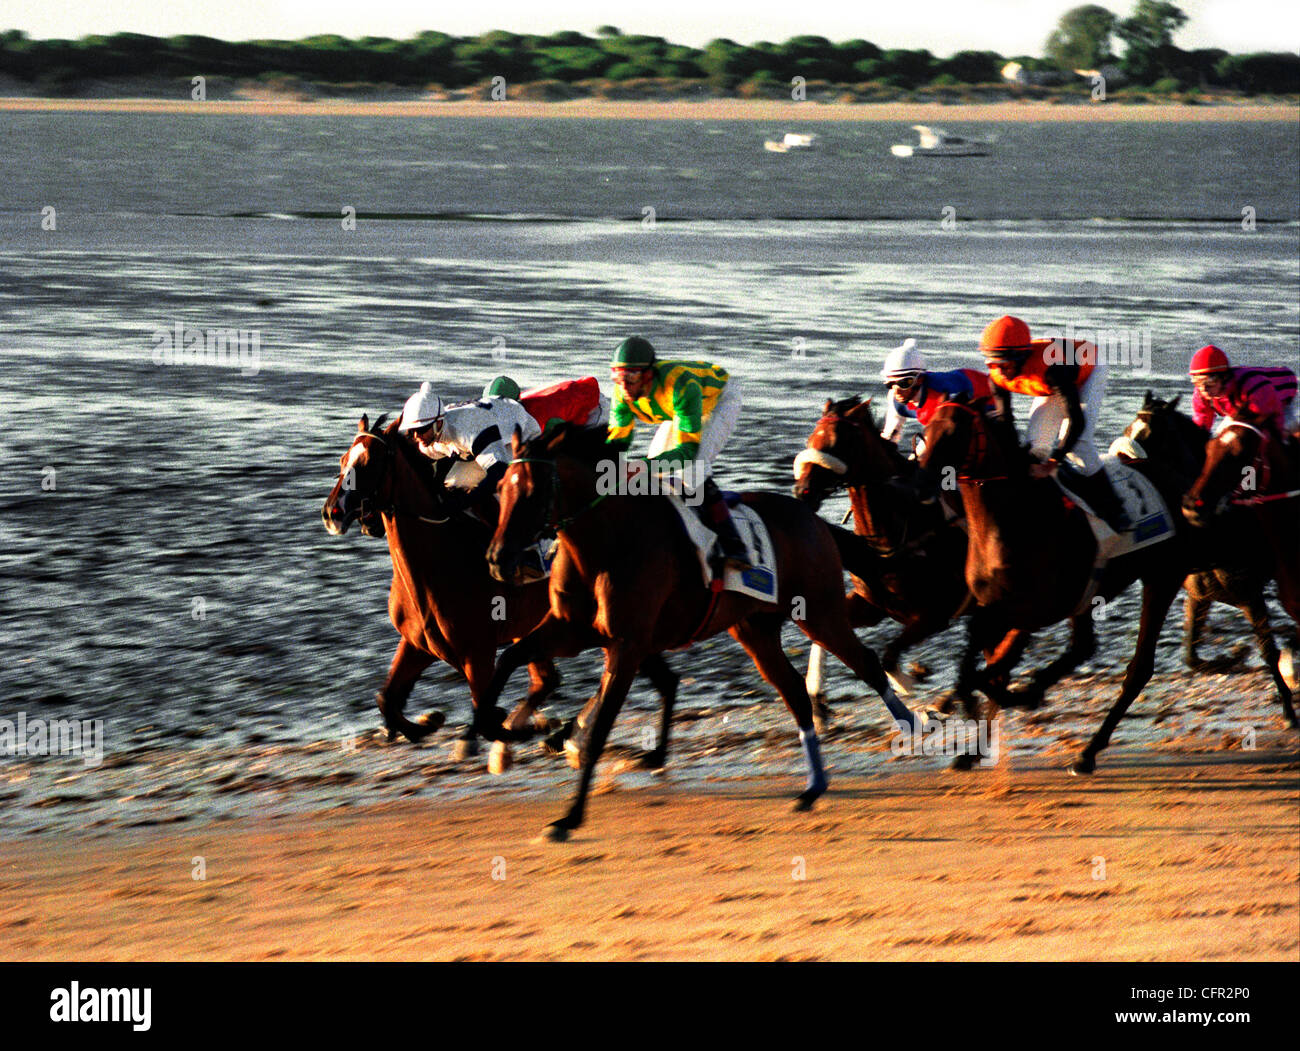 Carrera de caballos. Sanlúcar de Barrameda. Cádiz. Stock Photo